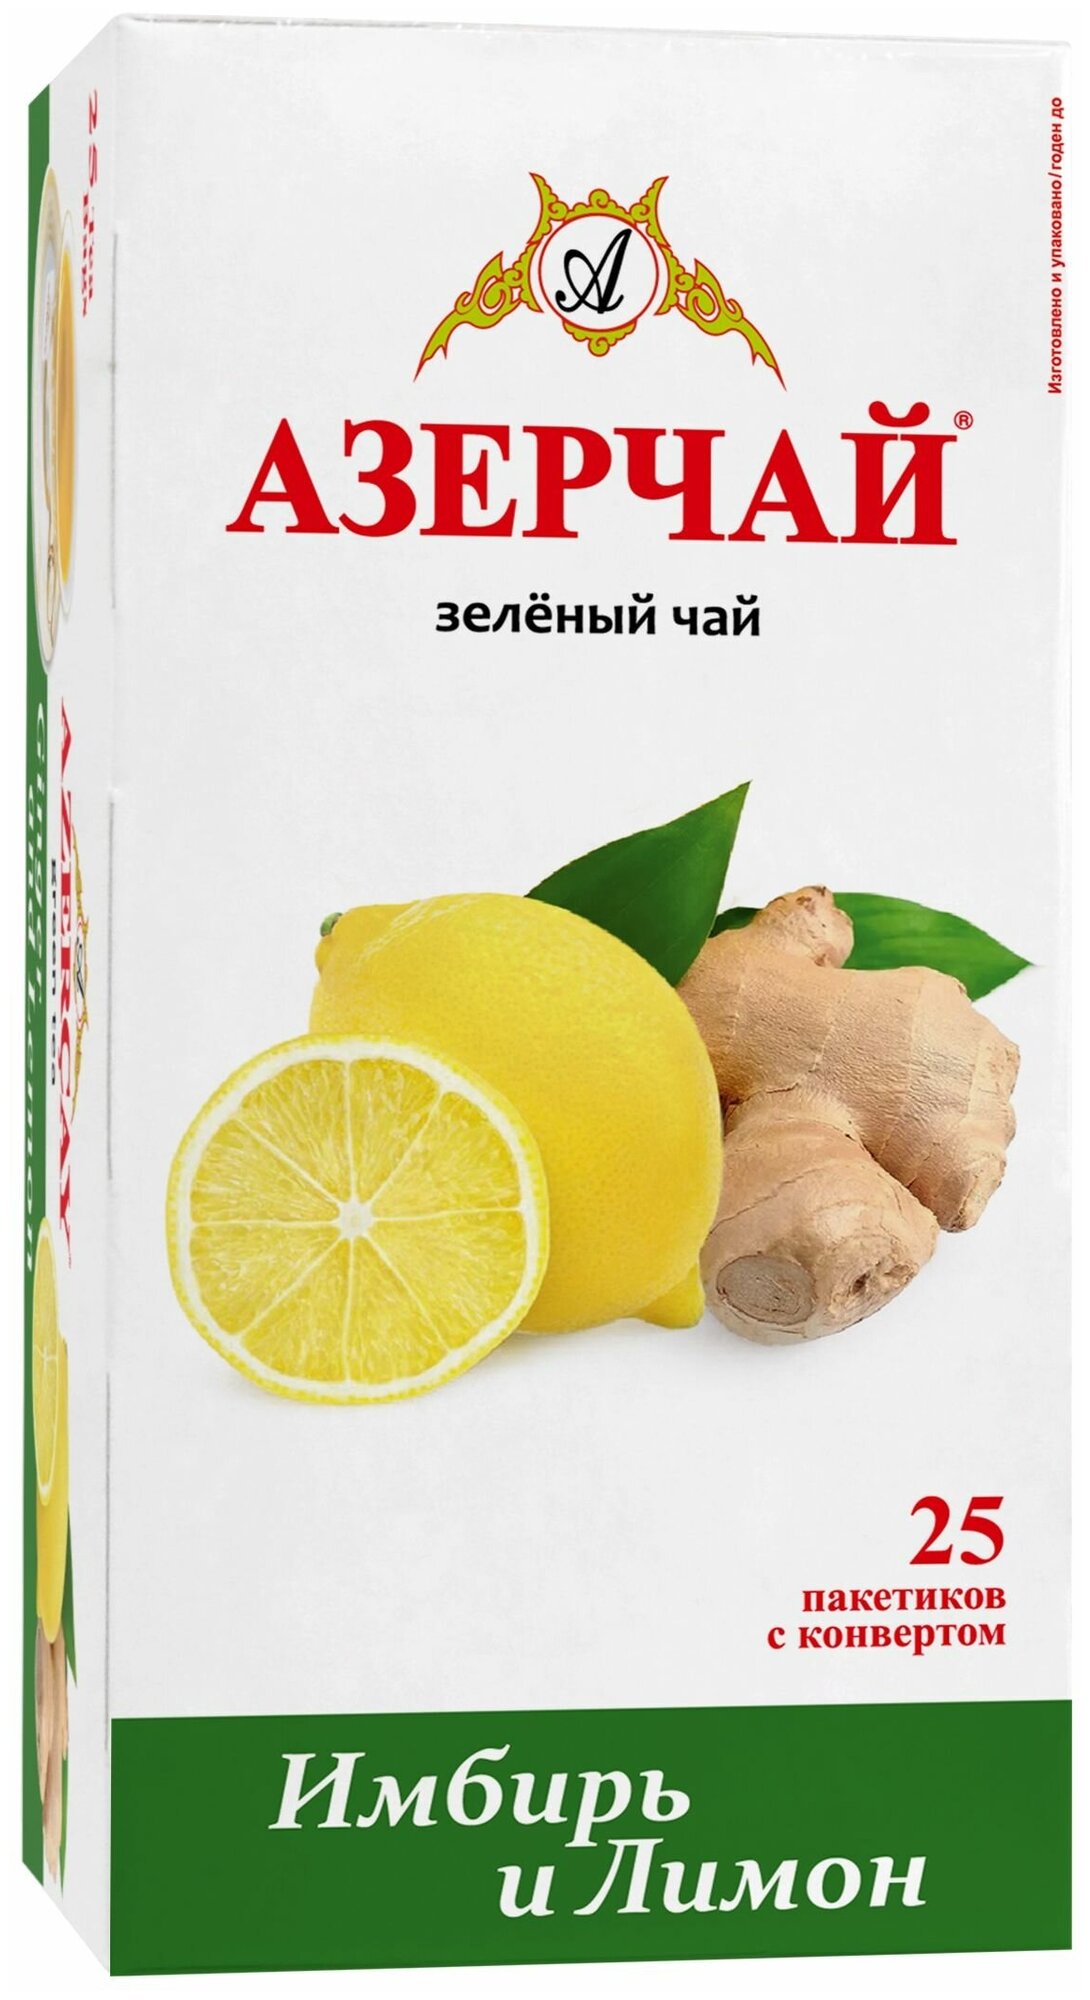 Чай в пакетиках зеленый Азерчай, с имбирем и лимоном, 25 шт, в сашетах